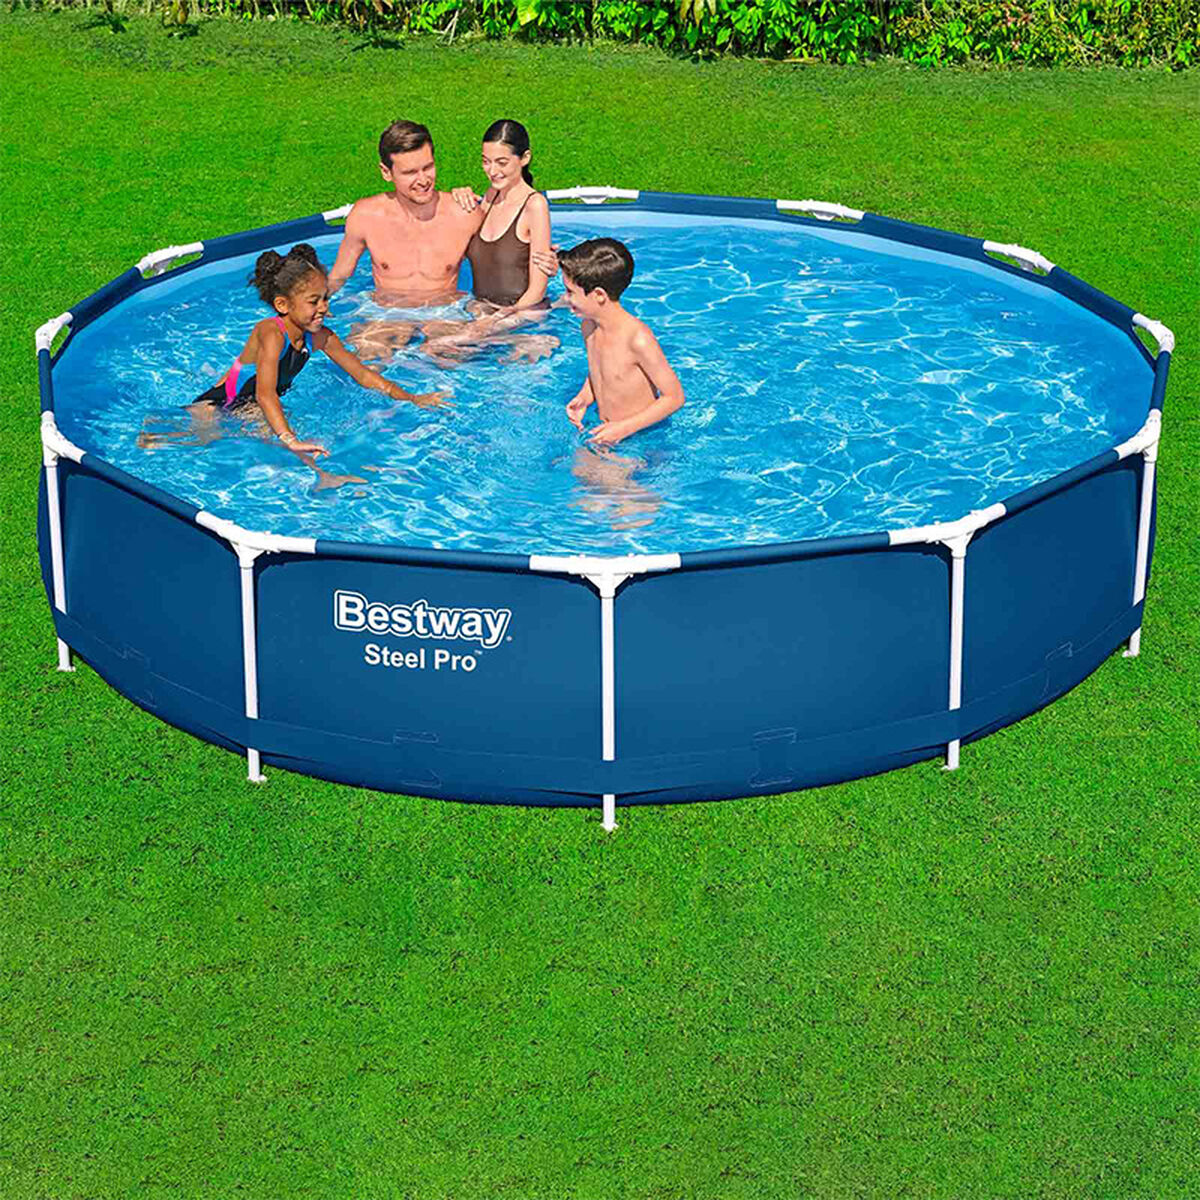 Detachable Pool Bestway 366 x 76 cm